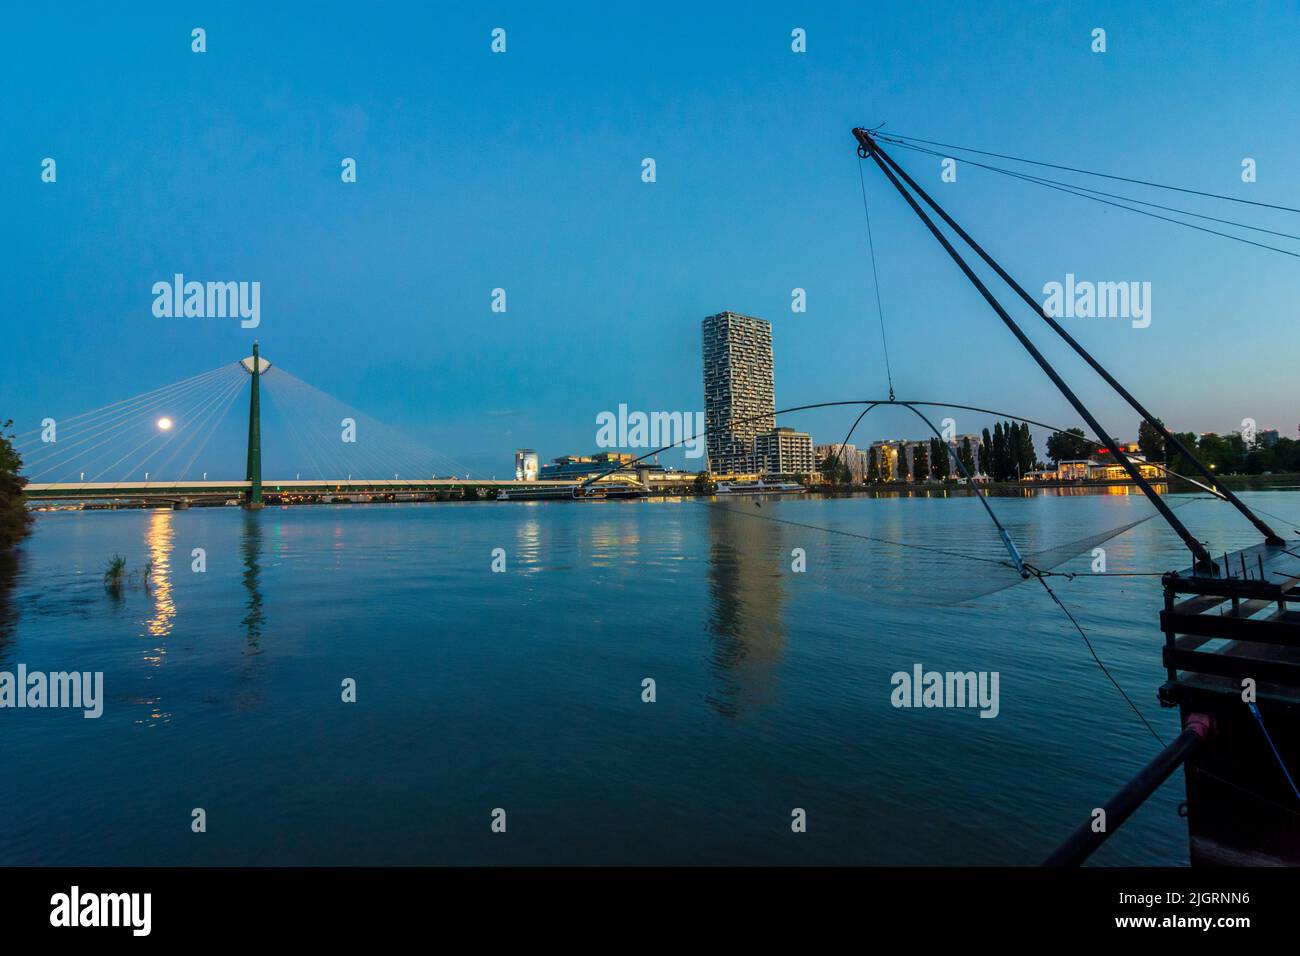 Wien, Vienne: rivière Donau (Danube), bateau Daubel avec filet de pêche, tour de la Marina, pont de métro Donaustadtbrücke, bateau de croisière, plein Mo Banque D'Images